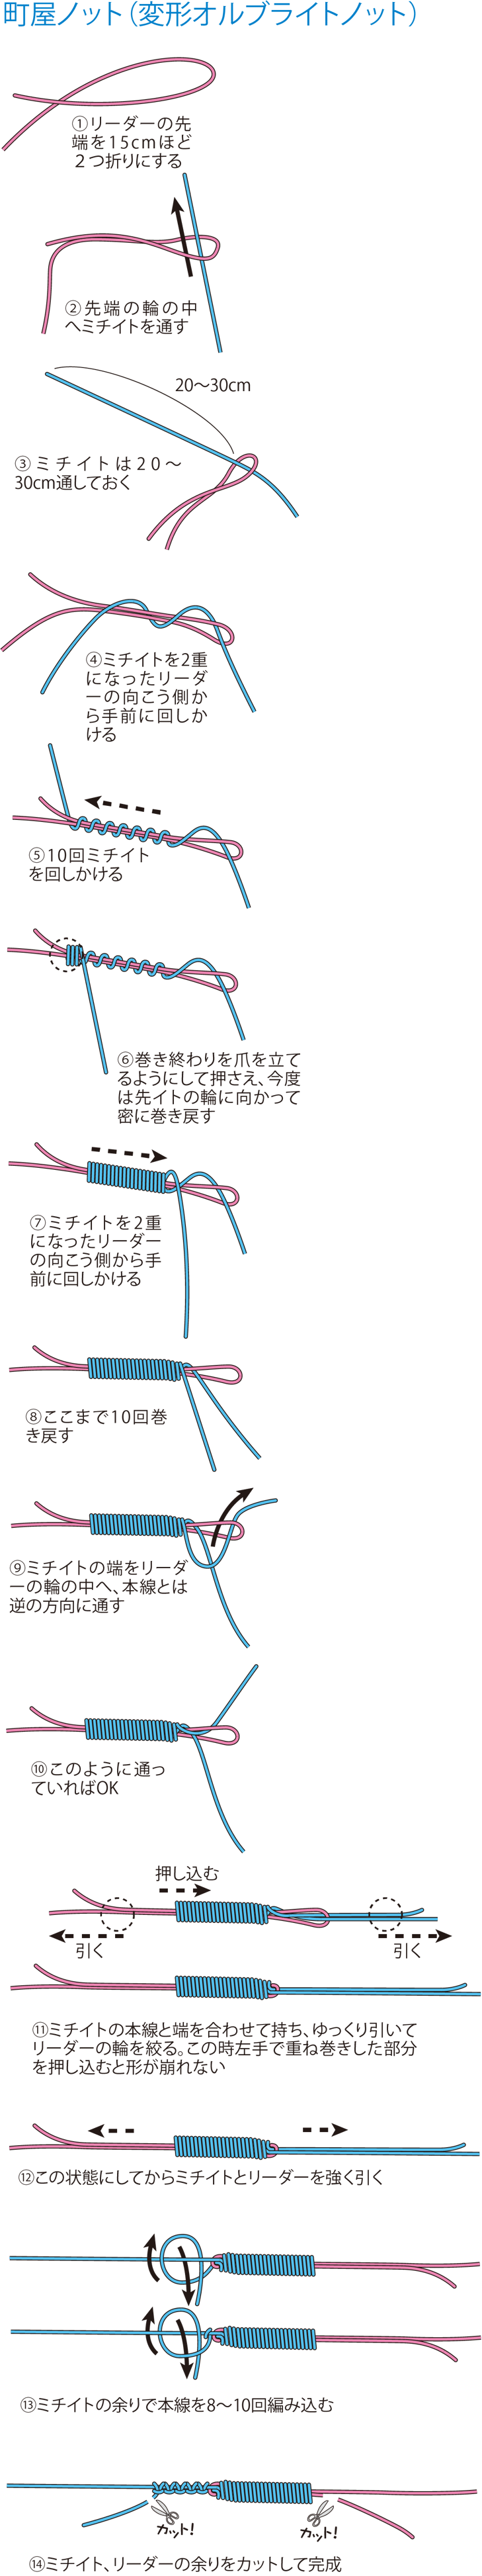 釣り糸の結び方 どれが最強 基本の結び18個を強度実験も交えて解説 第3回 Peラインとリーダーの結び方編 魚種別釣りガイド